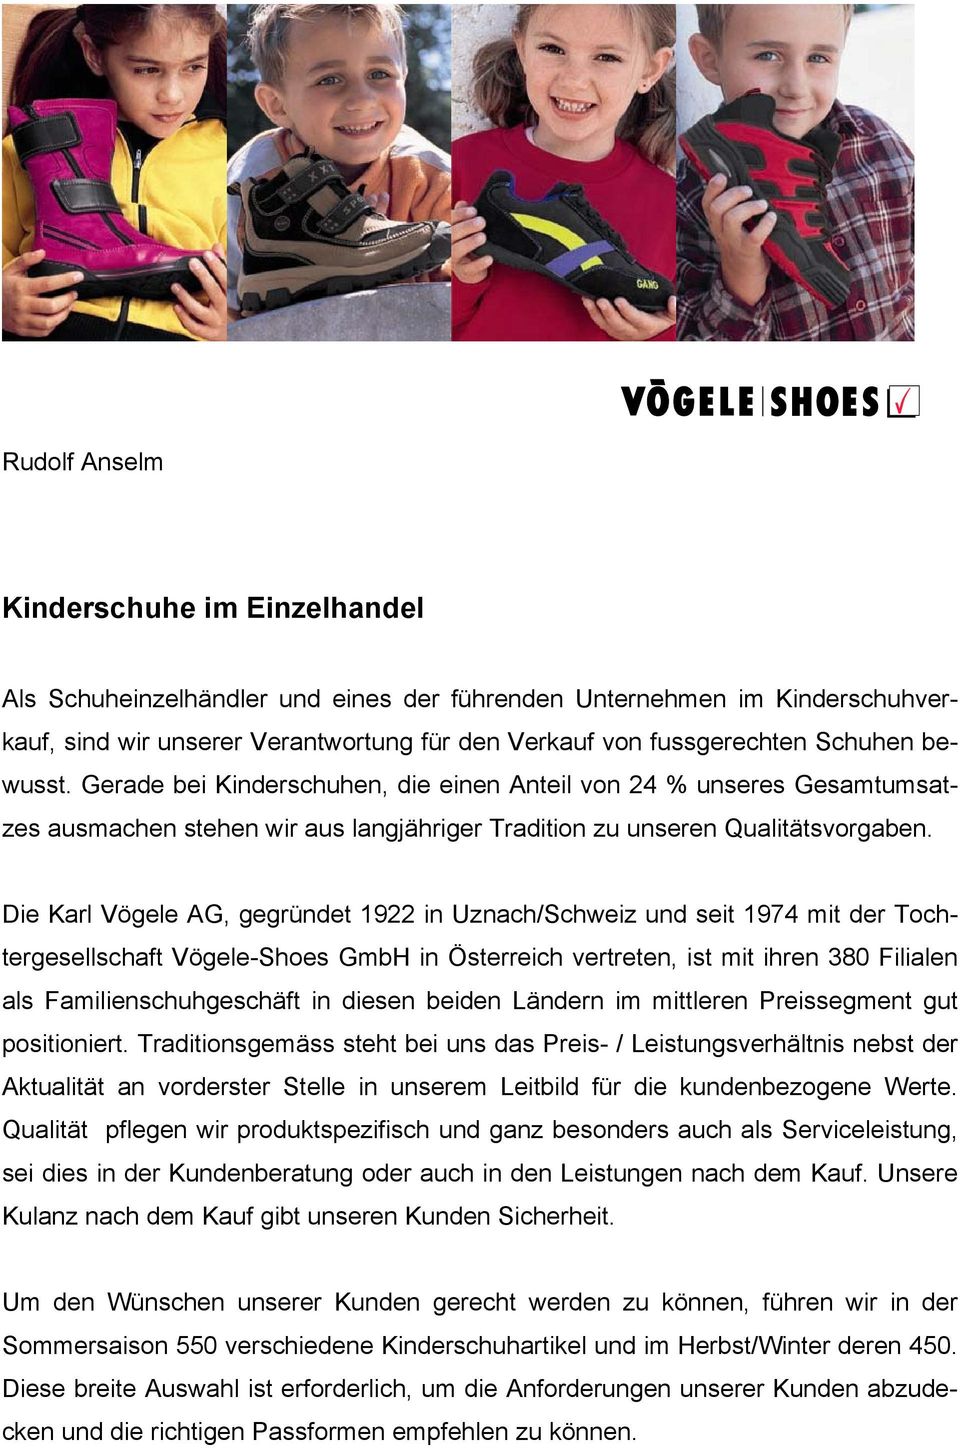 Die Karl Vögele AG, gegründet 1922 in Uznach/Schweiz und seit 1974 mit der Tochtergesellschaft Vögele-Shoes GmbH in Österreich vertreten, ist mit ihren 380 Filialen als Familienschuhgeschäft in